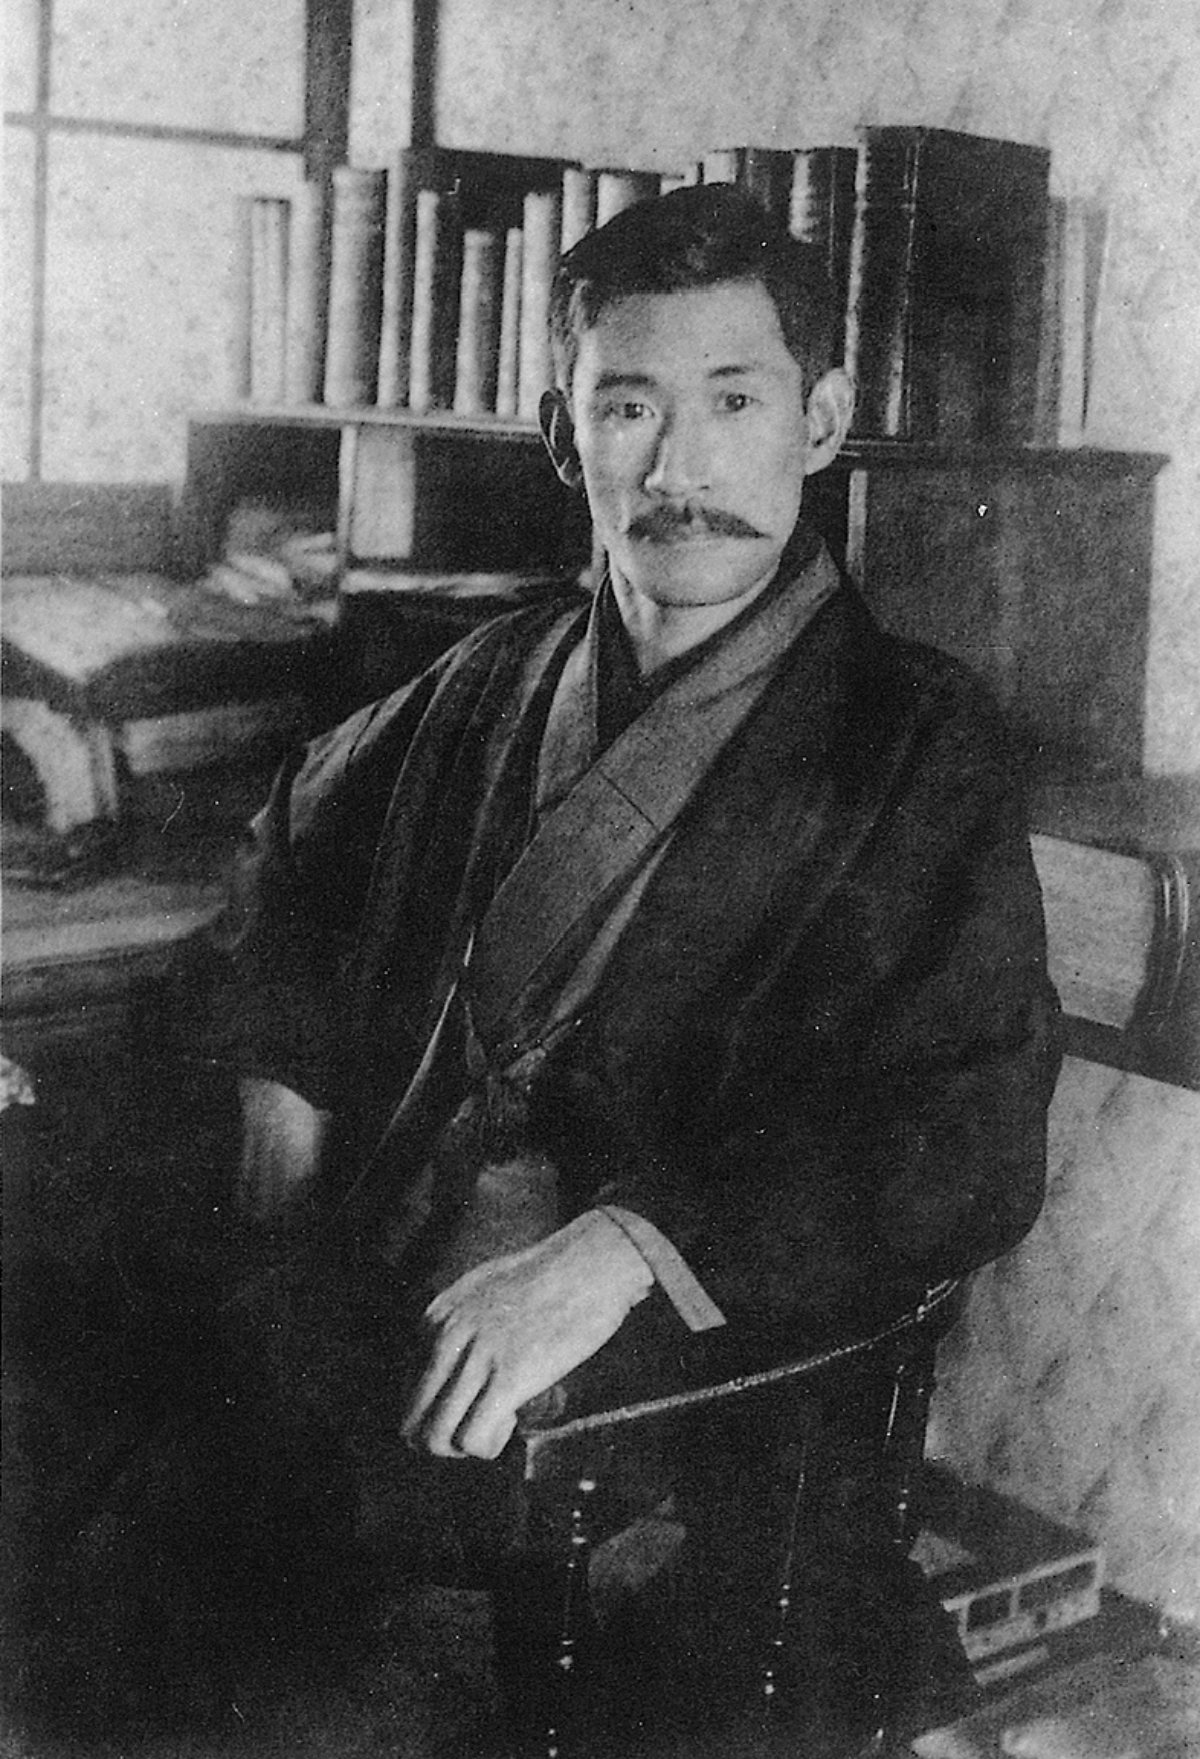 Hogetsu Shimamuru